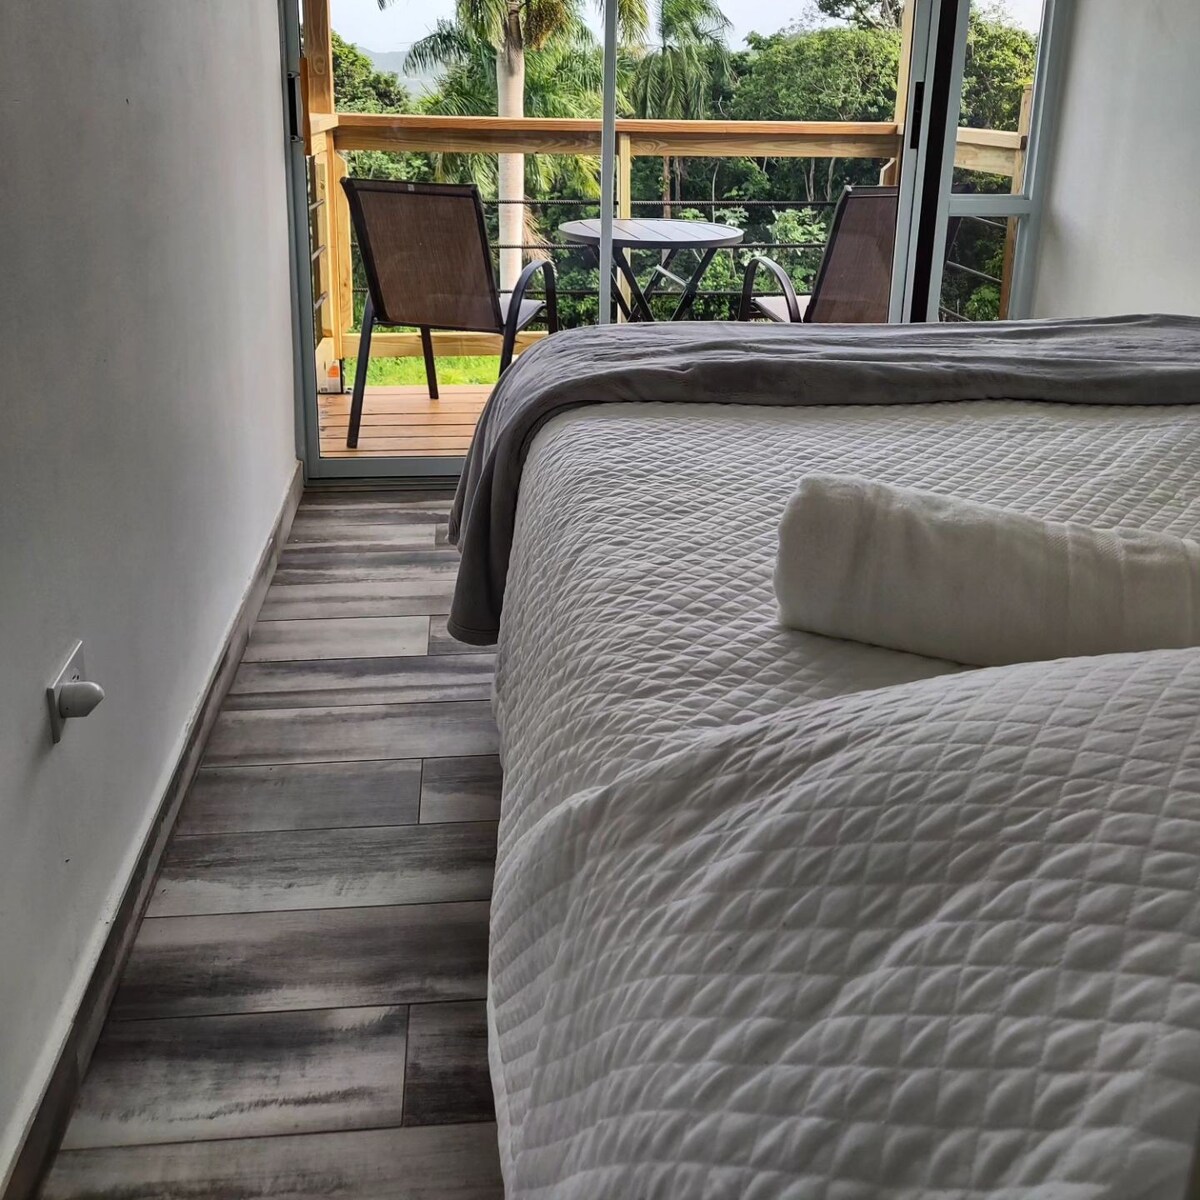 Tierra Adentro Bed & Breakfast - Yunque Room